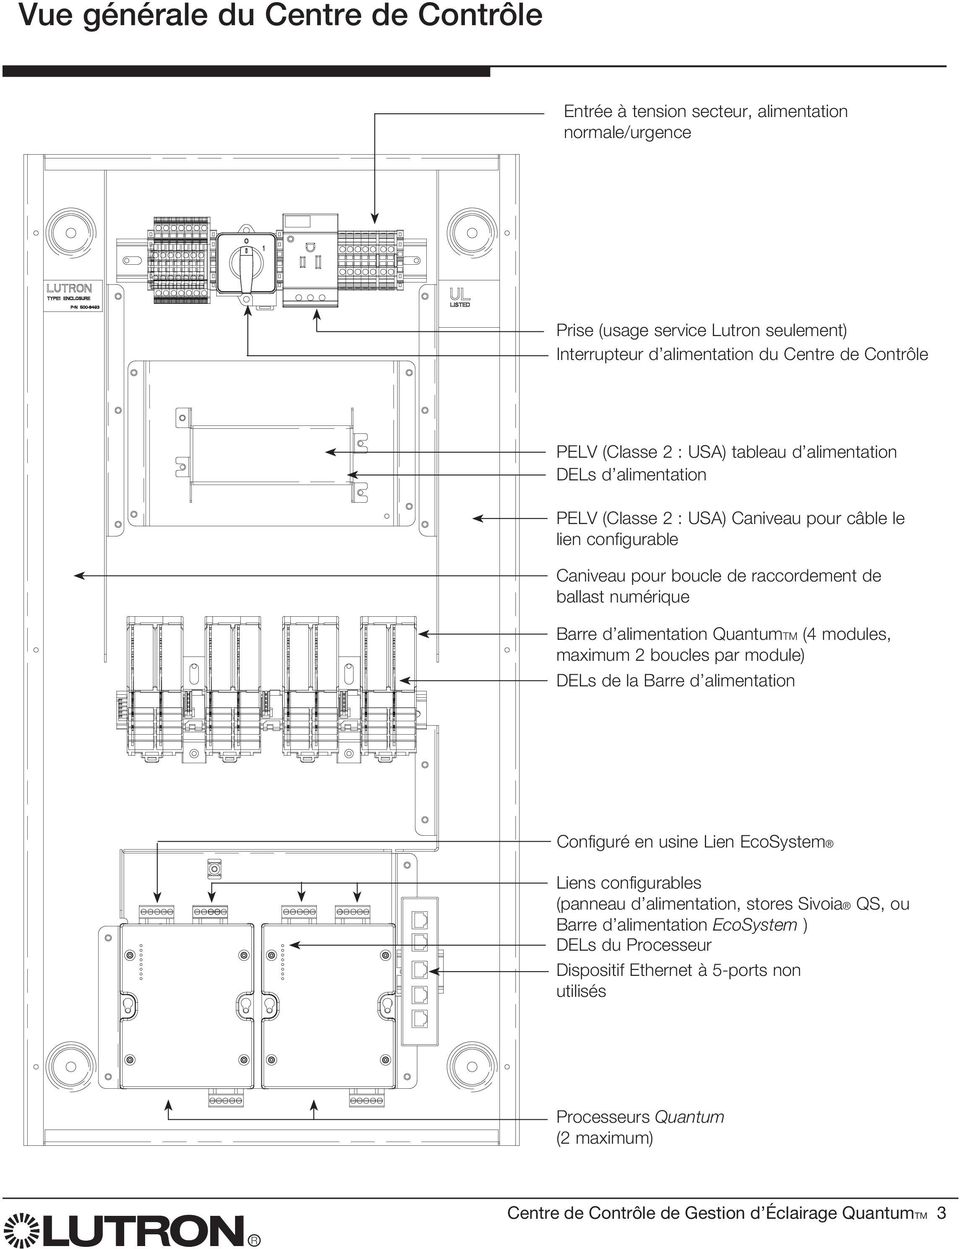 ballast numérique Barre d alimentation TM (4 modules, maximum 2 boucles par module) DELs de la Barre d alimentation Configuré en usine Lien Liens configurables (panneau d